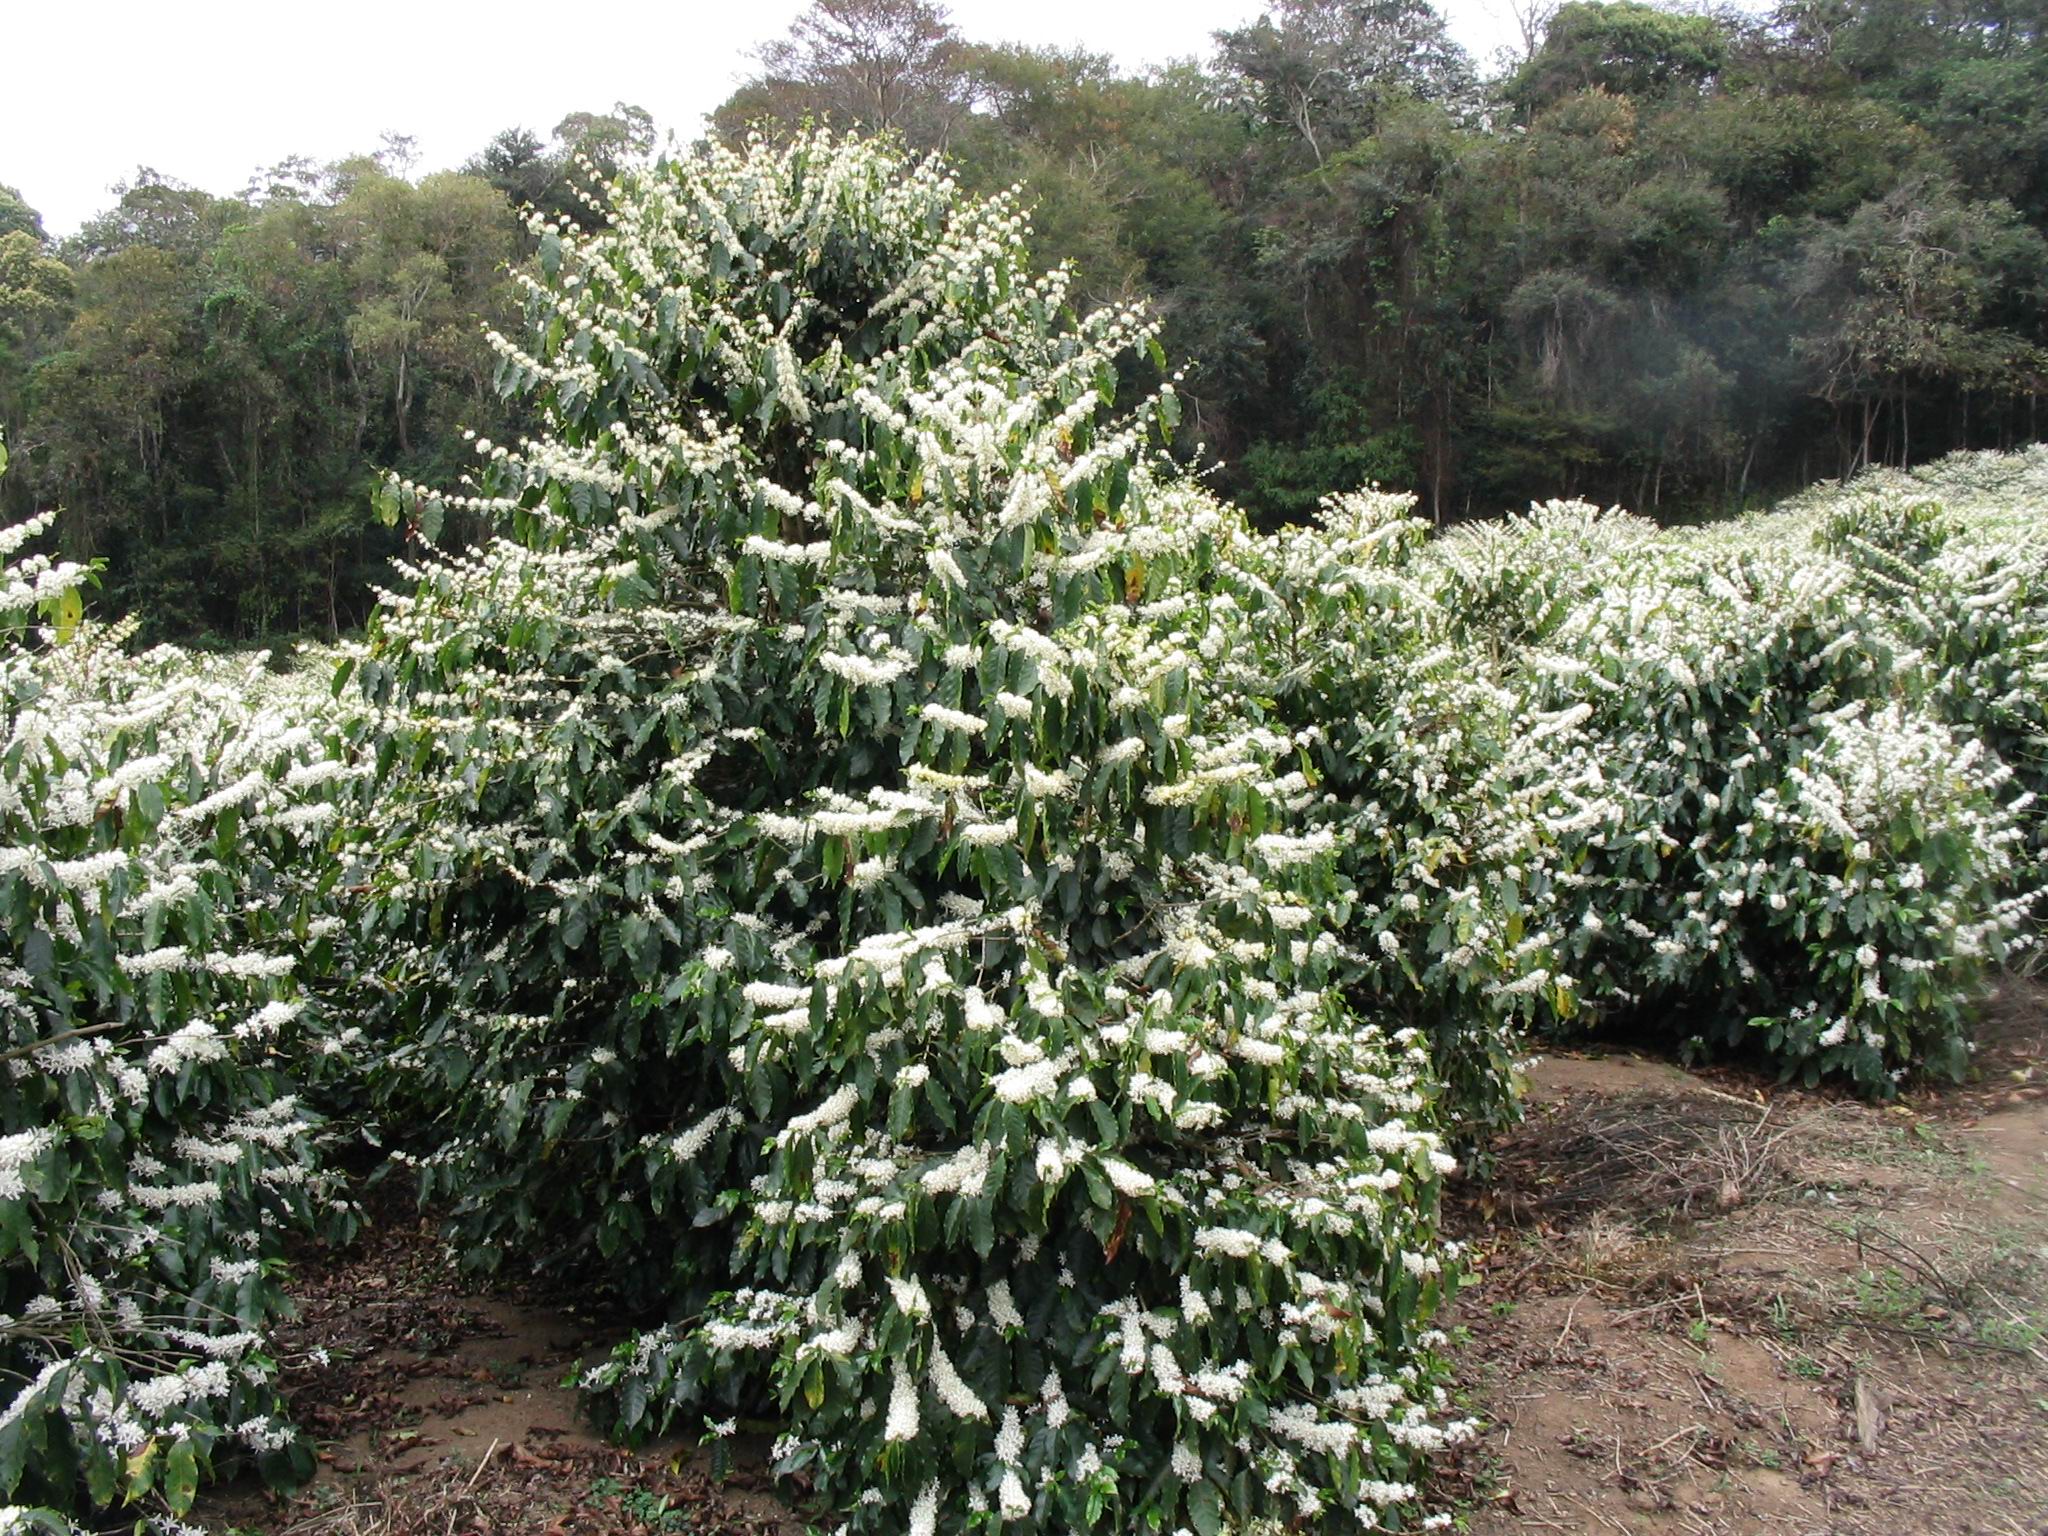 Как ухаживать за кофейным деревом в домашних условиях, виды и проблемы в выращивании